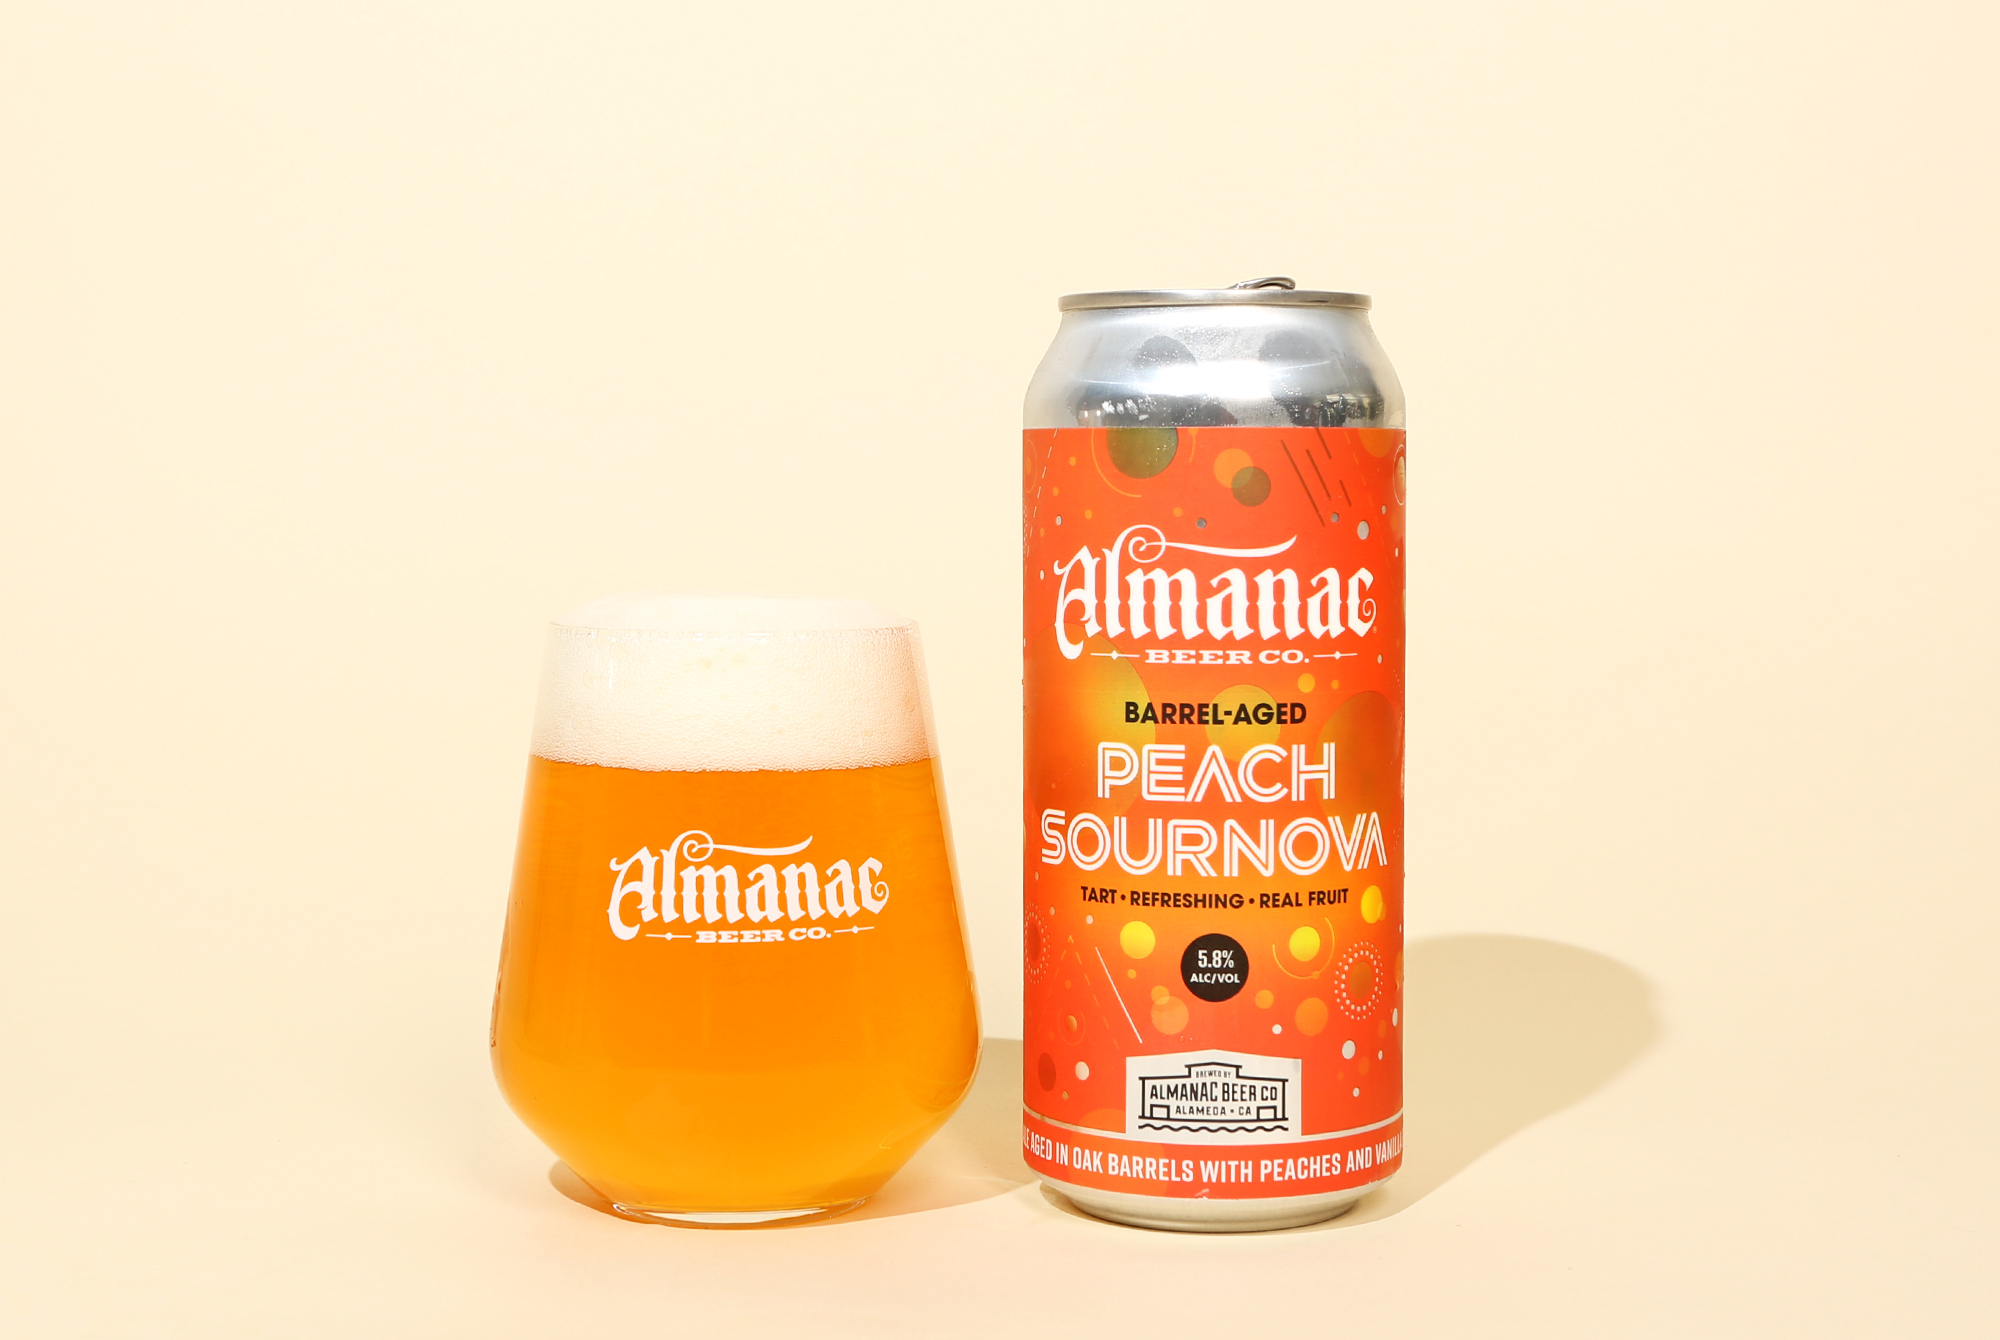 almanac beer co peach sournova